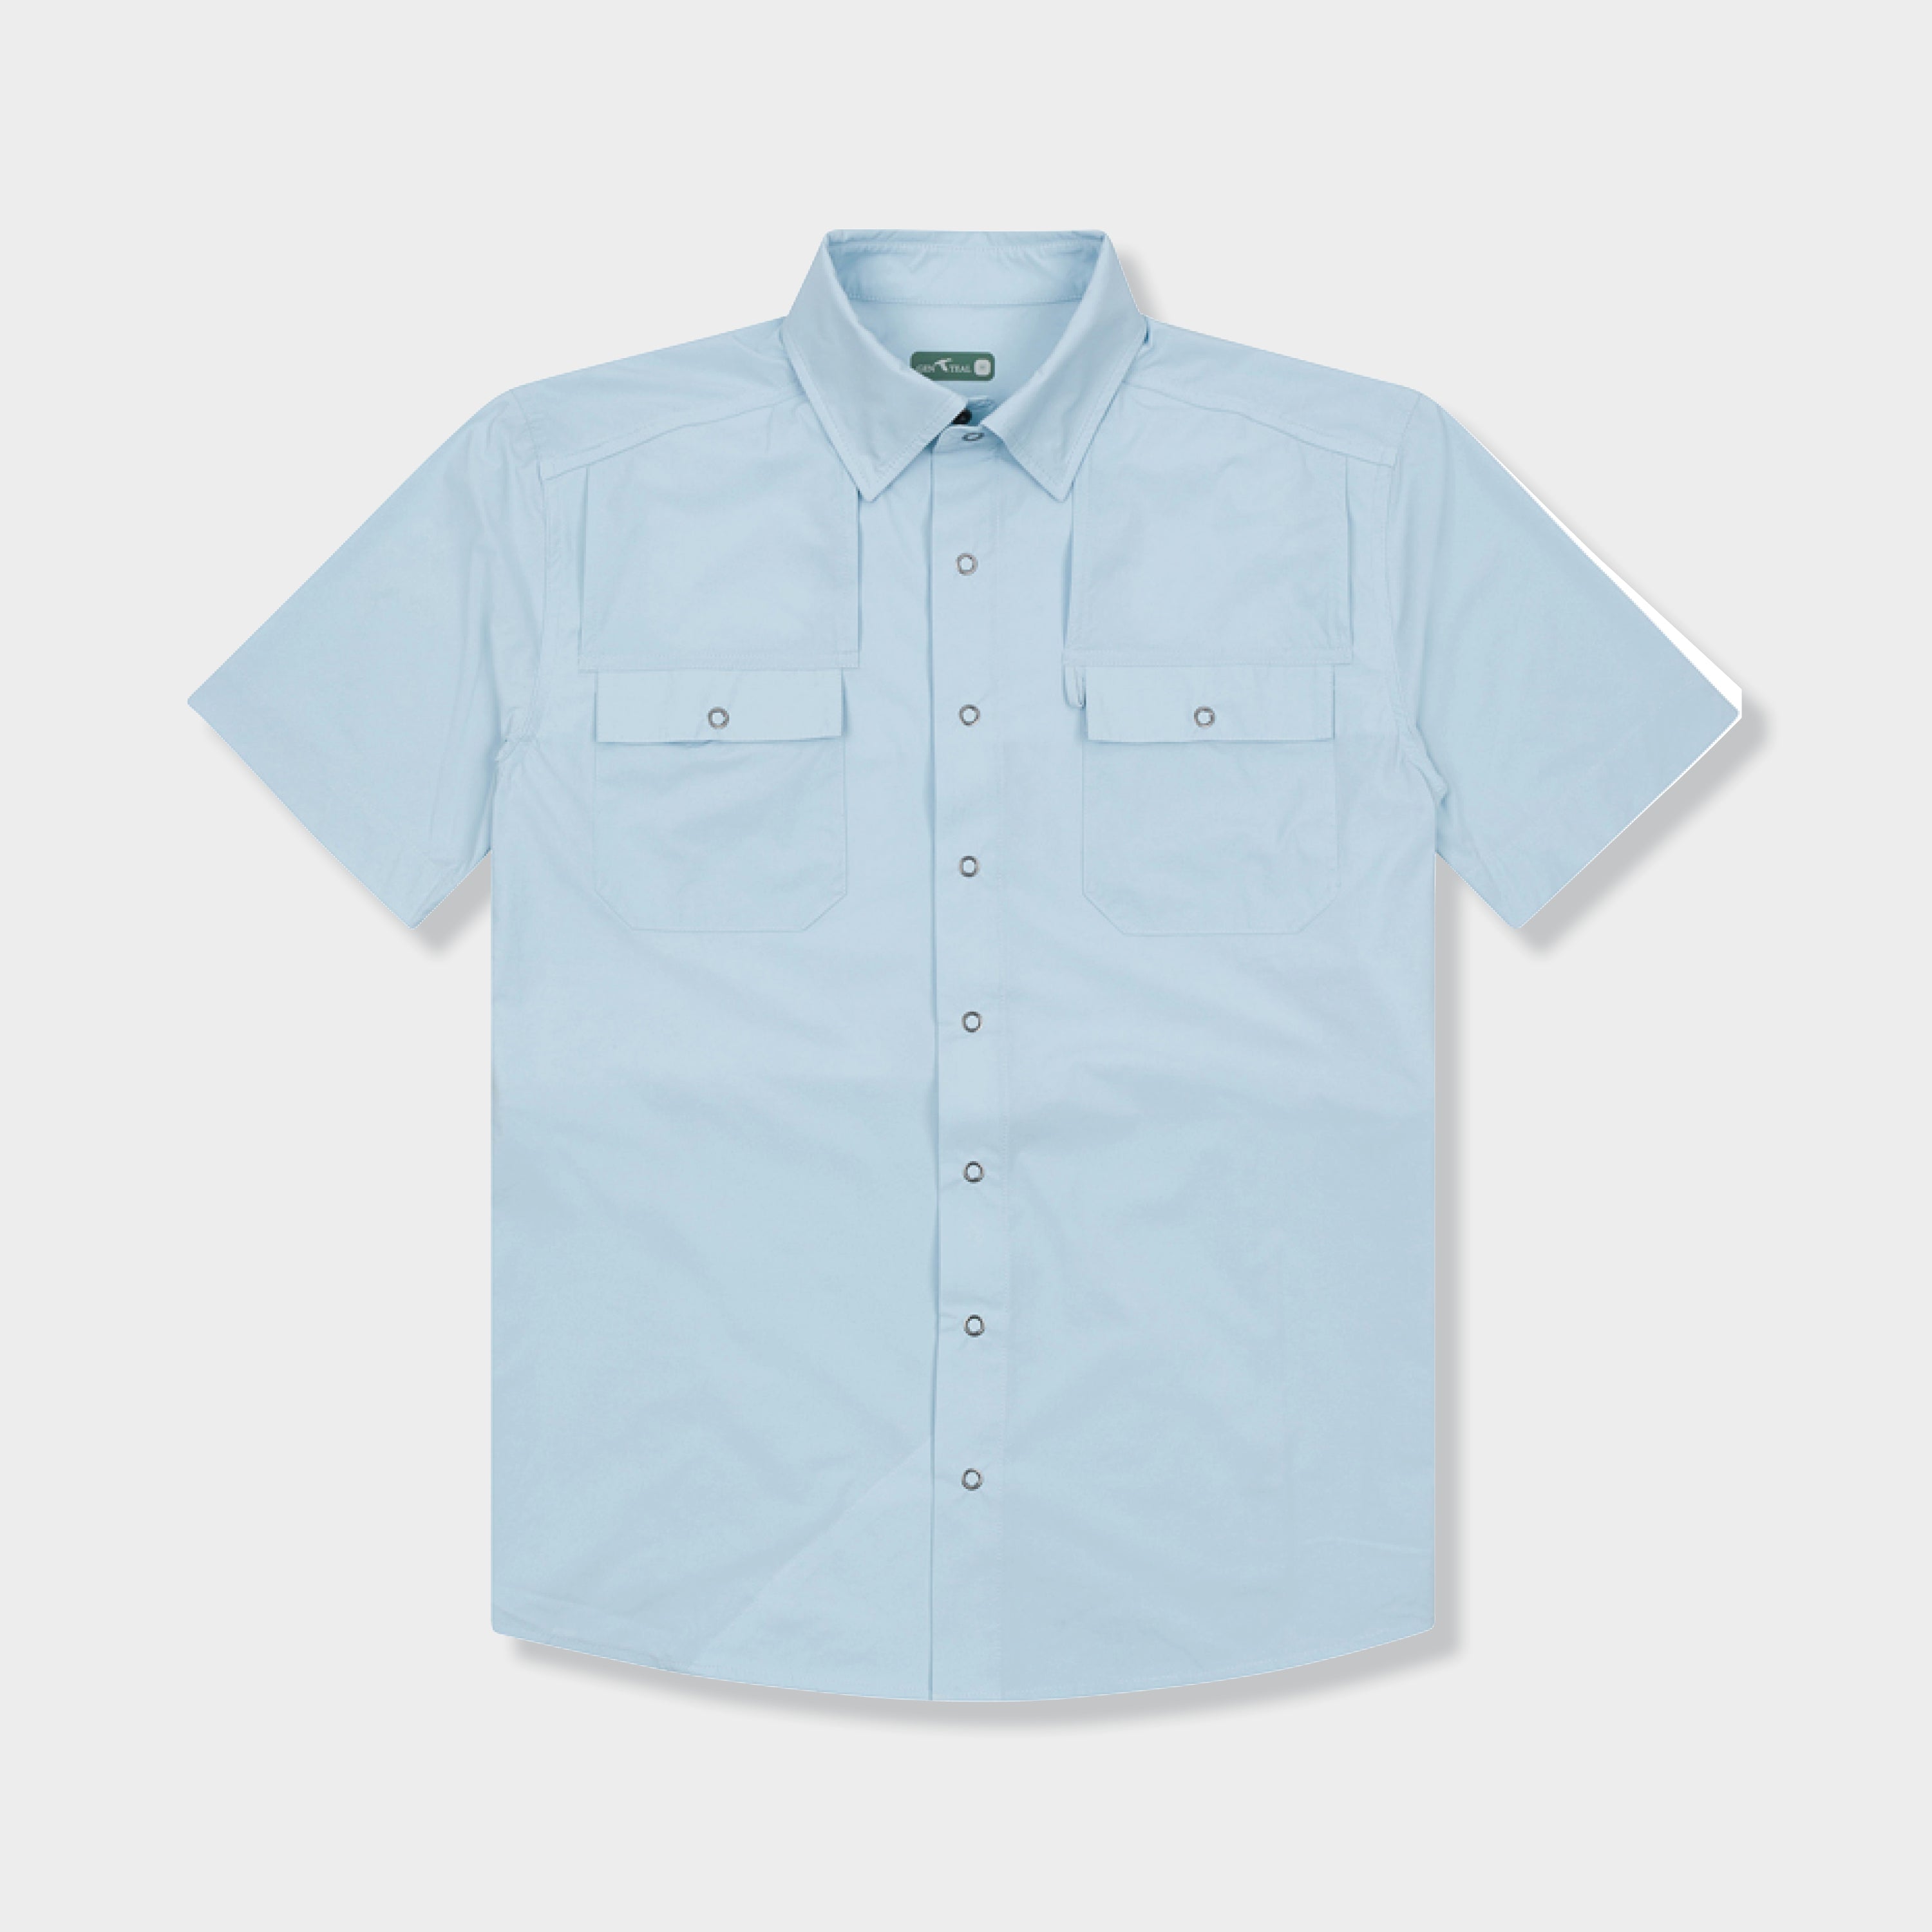 mens light blue short sleeve sport shirt